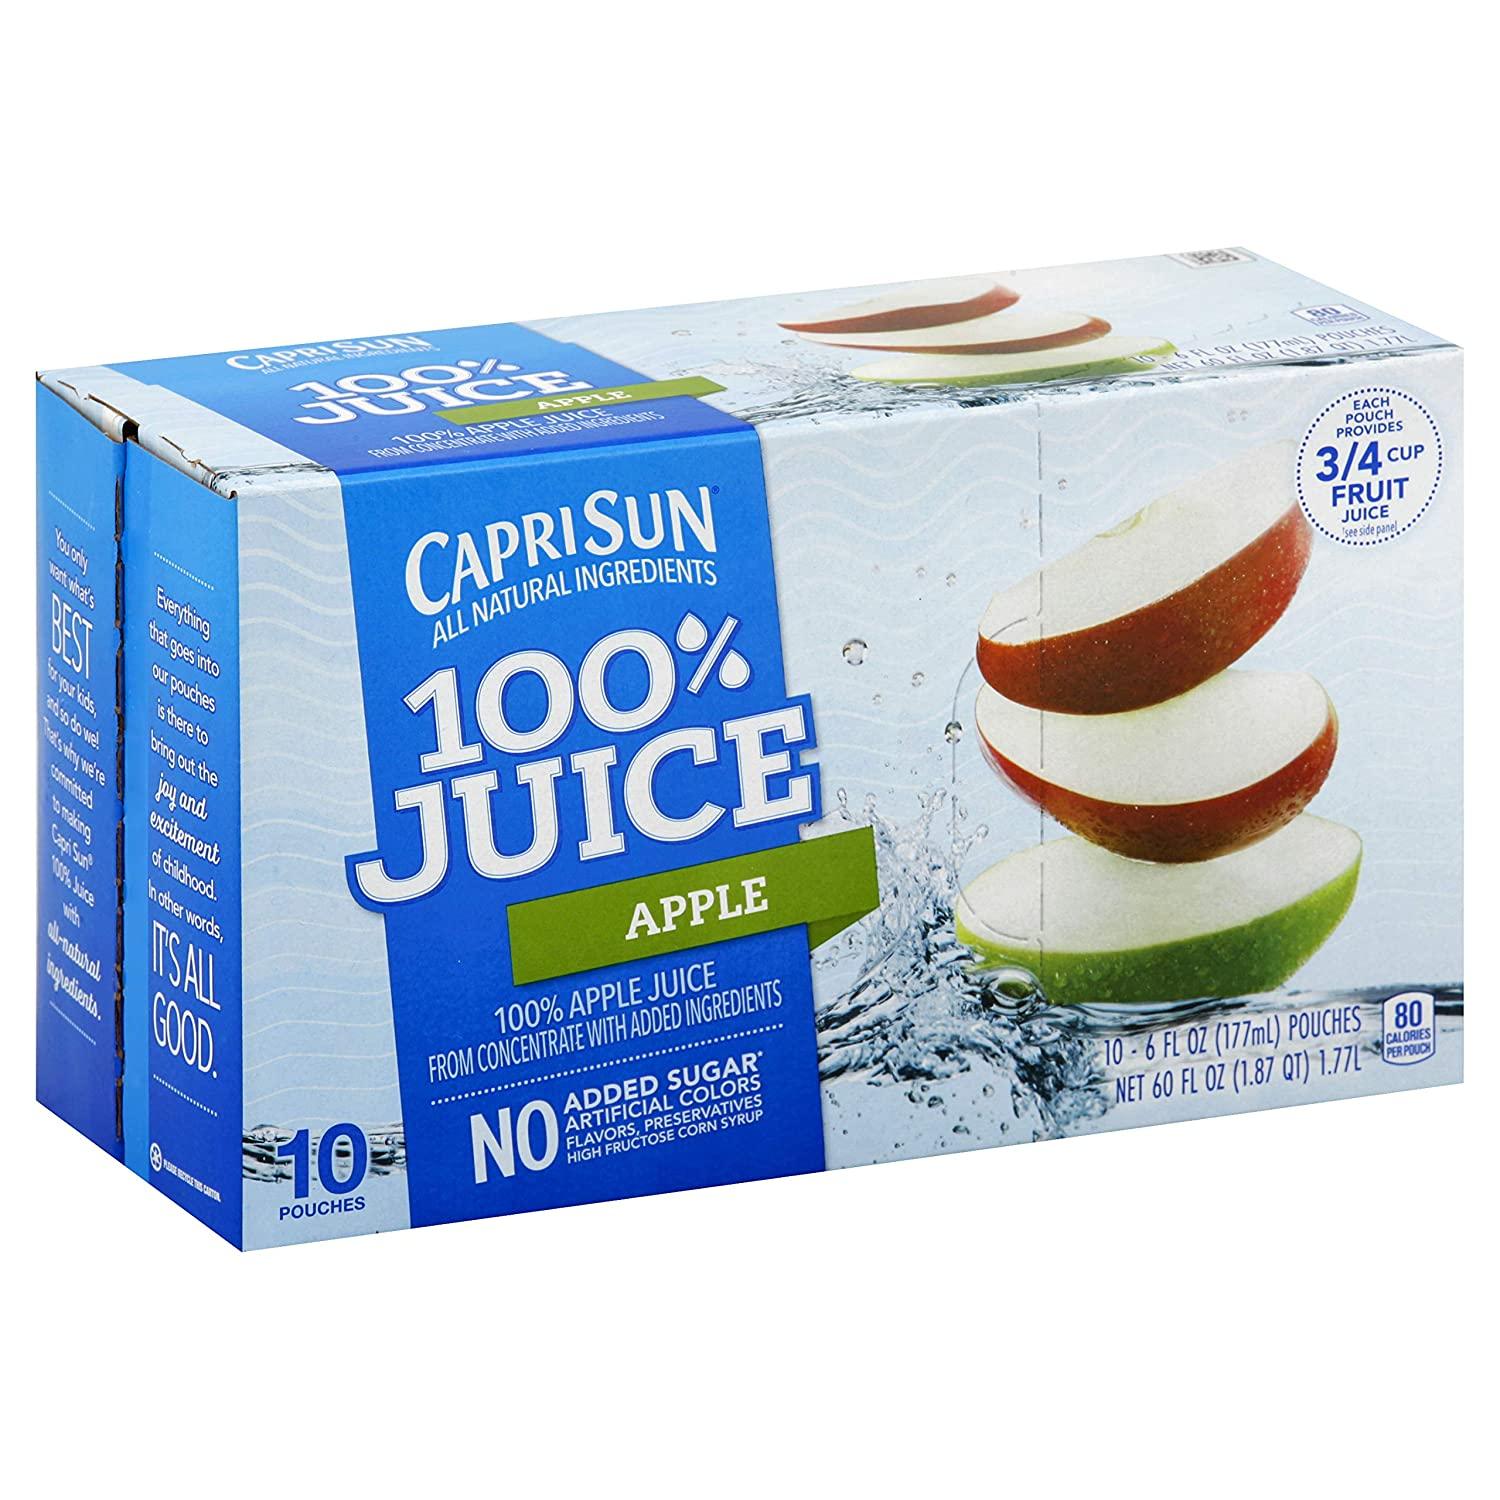 Capri Sun 100% Fruit Punch Juice - 10pk/6 fl oz Pouches